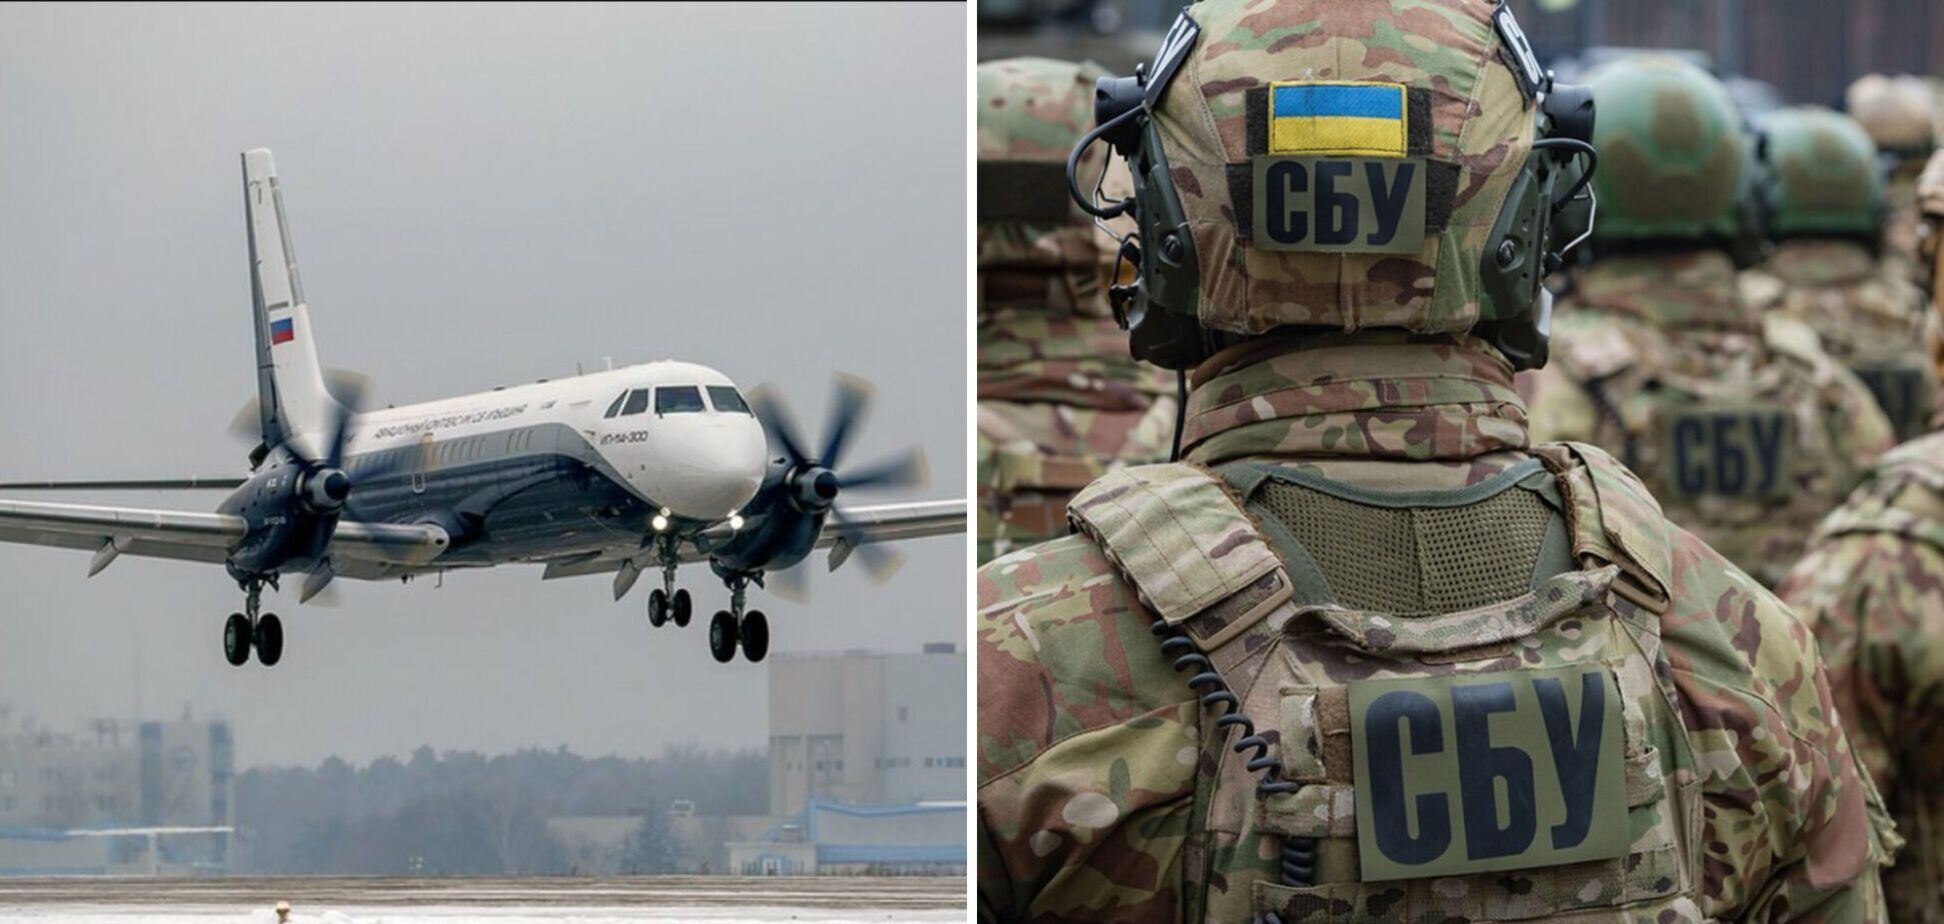 СБУ під час спецоперації знешкодила ДРГ, яка планувала збити пасажирський літак над Росією чи Білоруссю